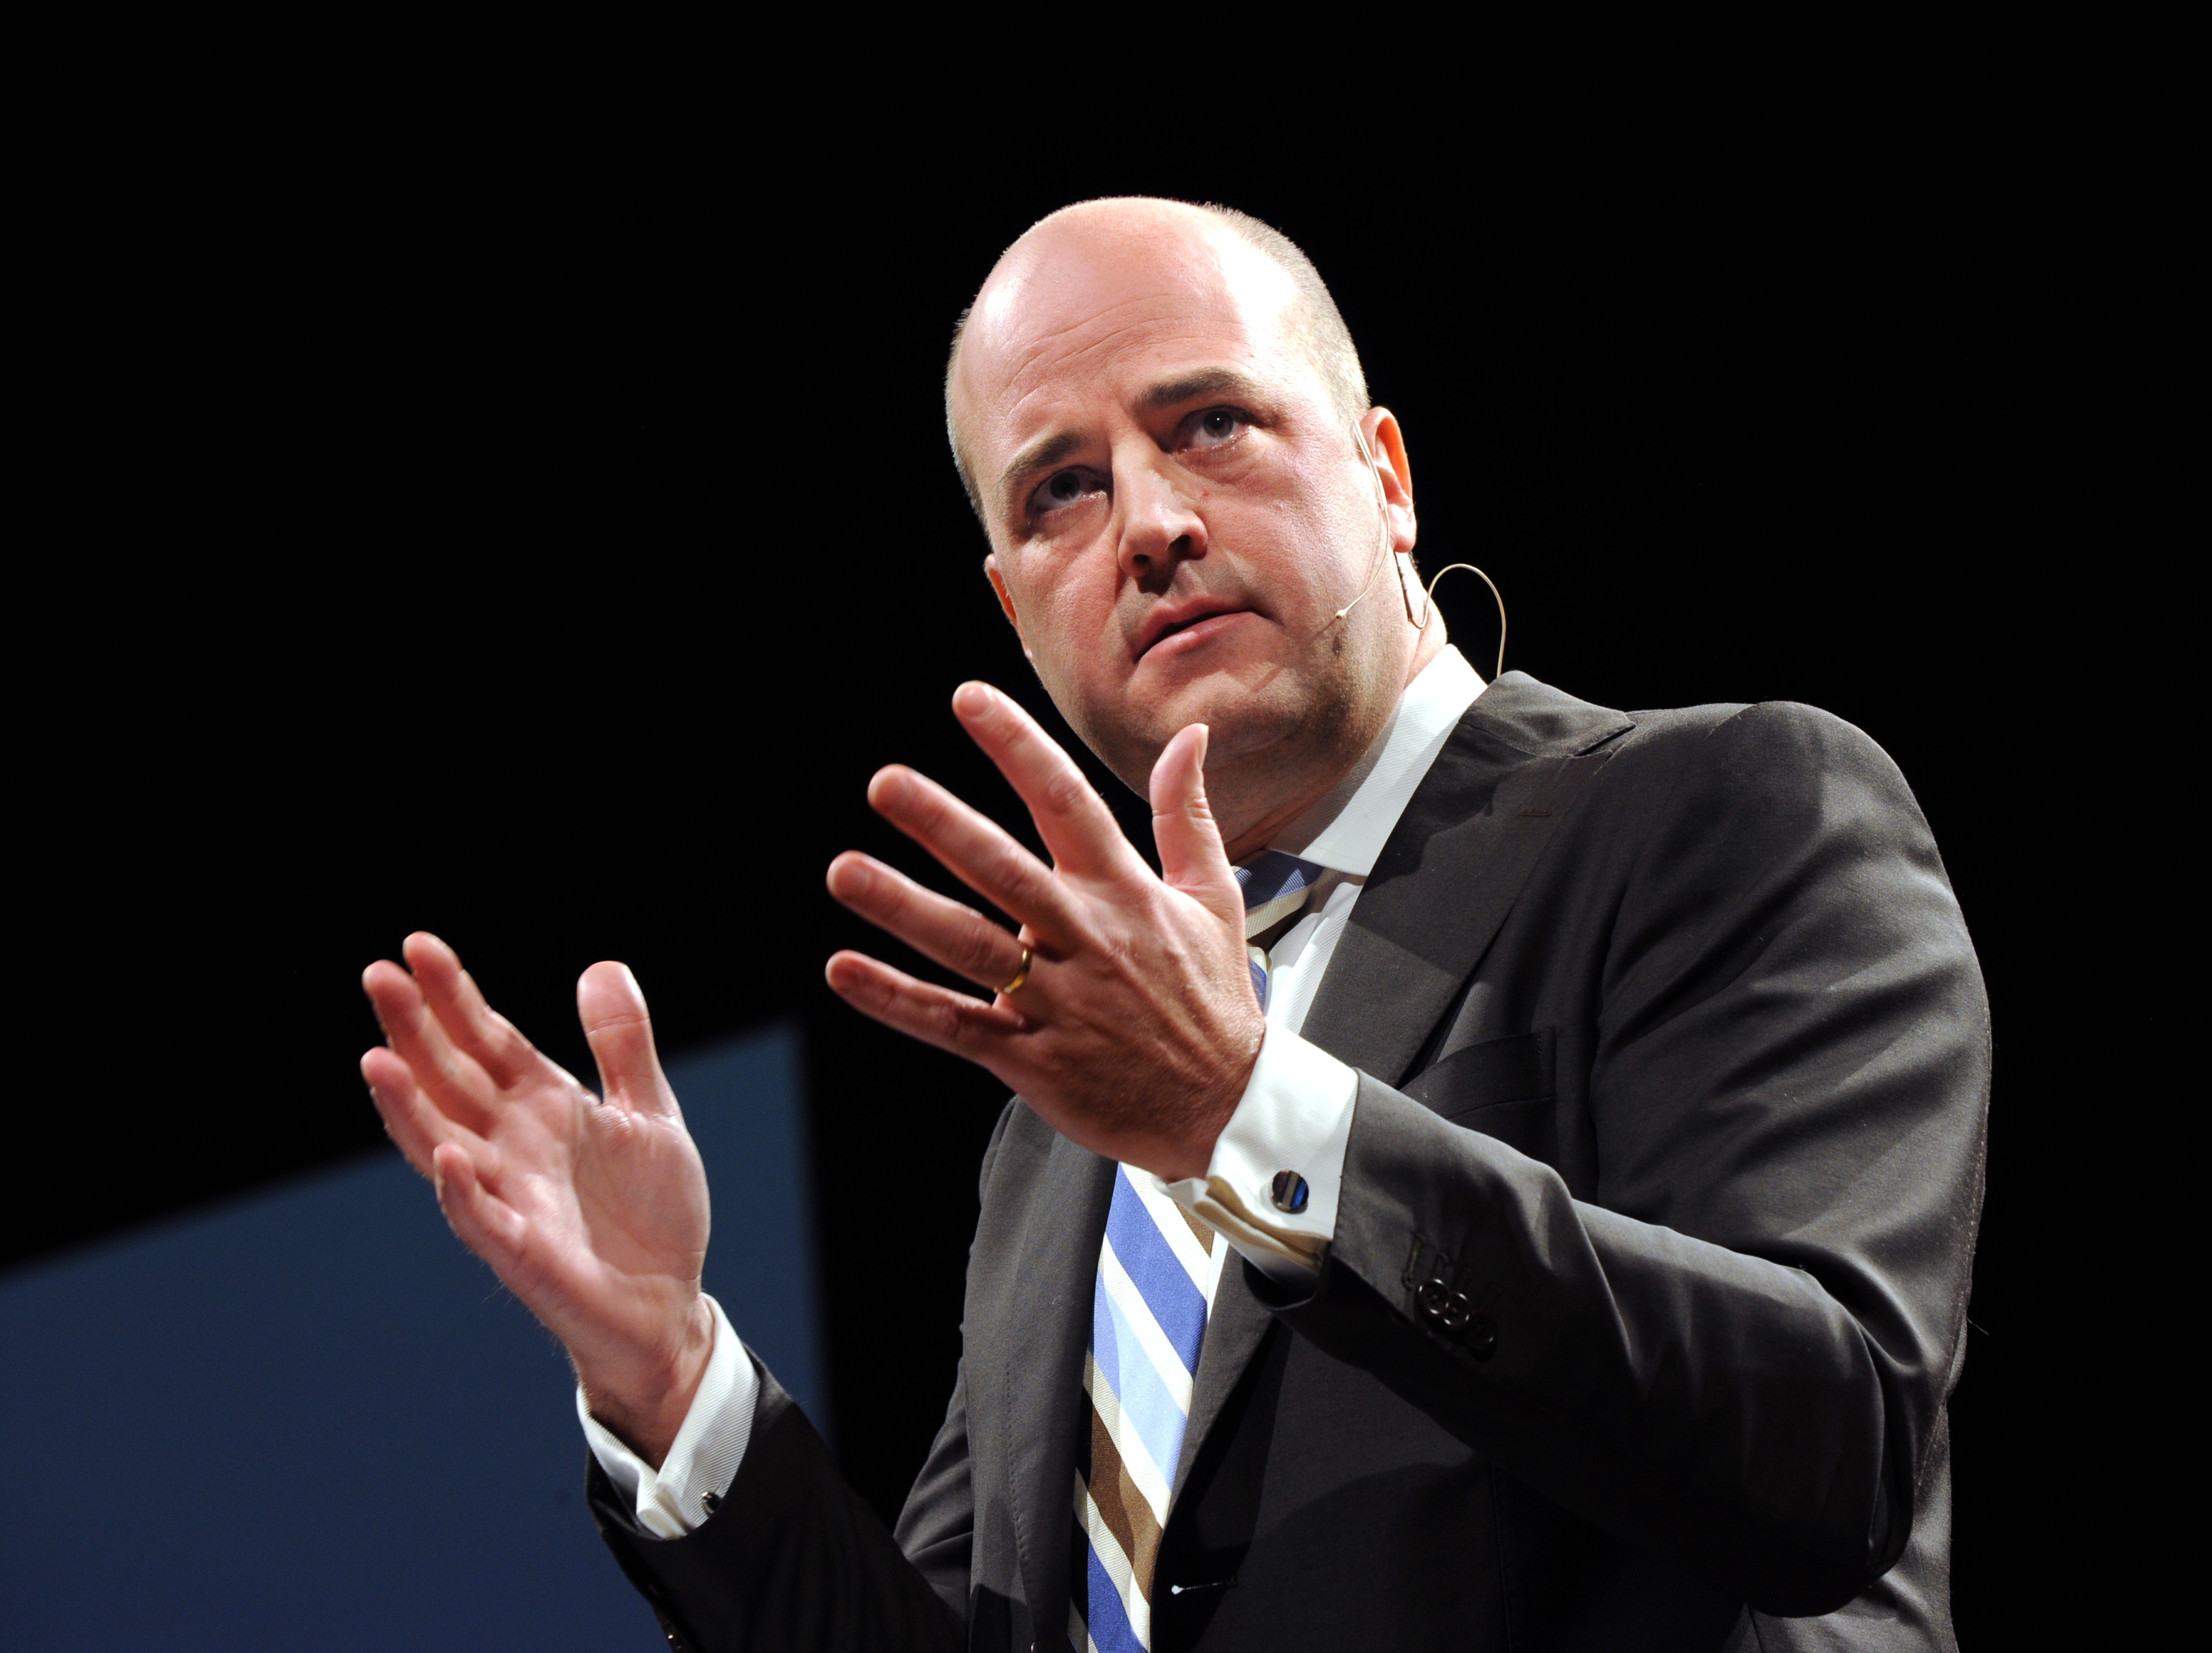 Fredrik Reinfeldt, Stureplan, Fri fot, Polisen, Son, Utredning, Misshandel, Anhållen